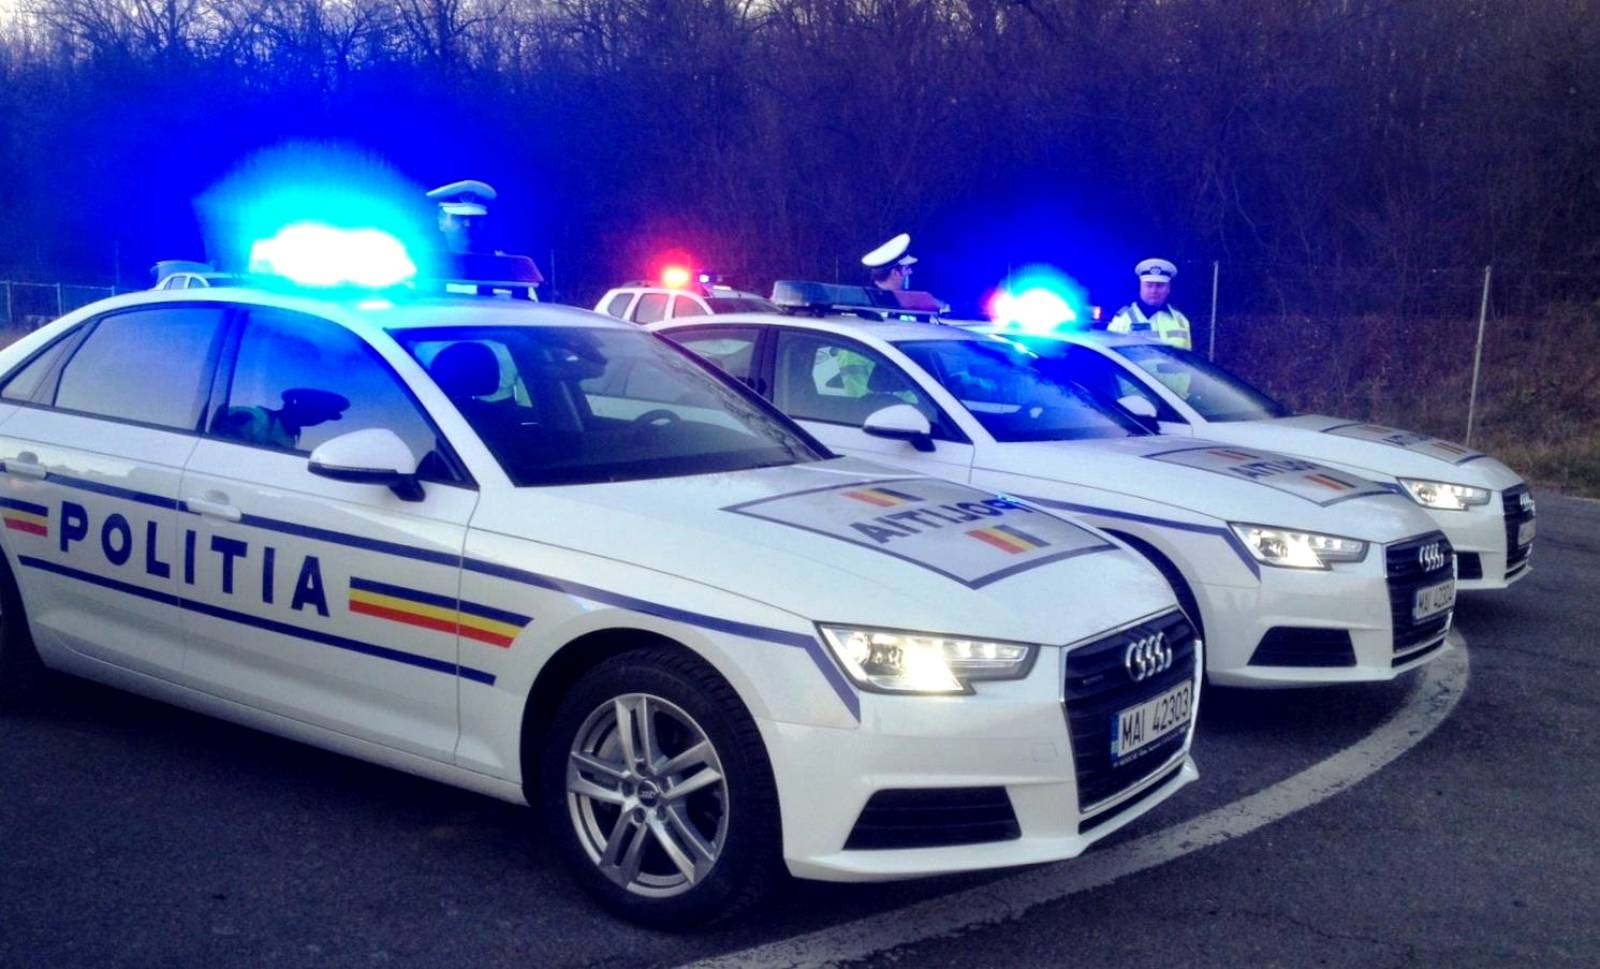 Roemeense politie Attentie van de bestuurder